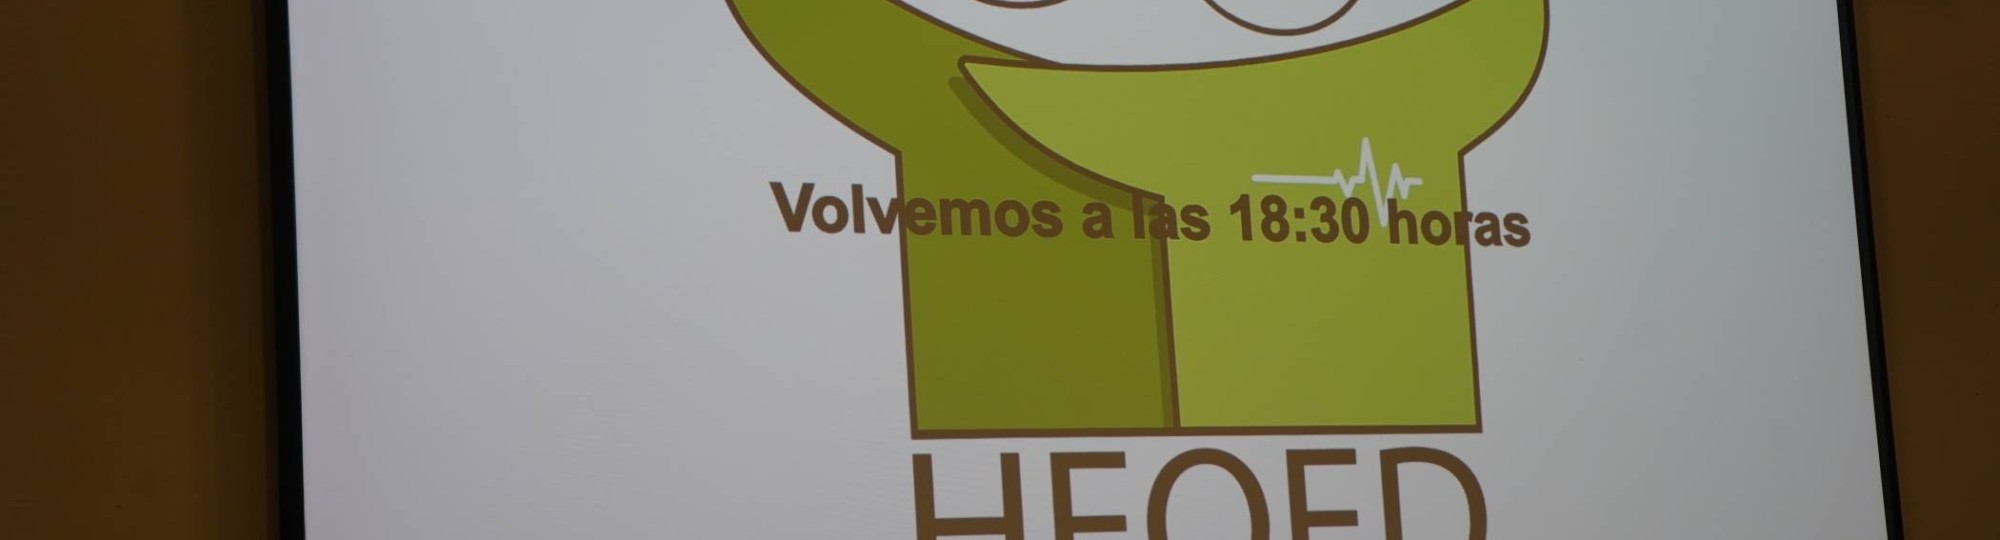 Powerpoint van HEQED bijeenkomst in Zaragoza